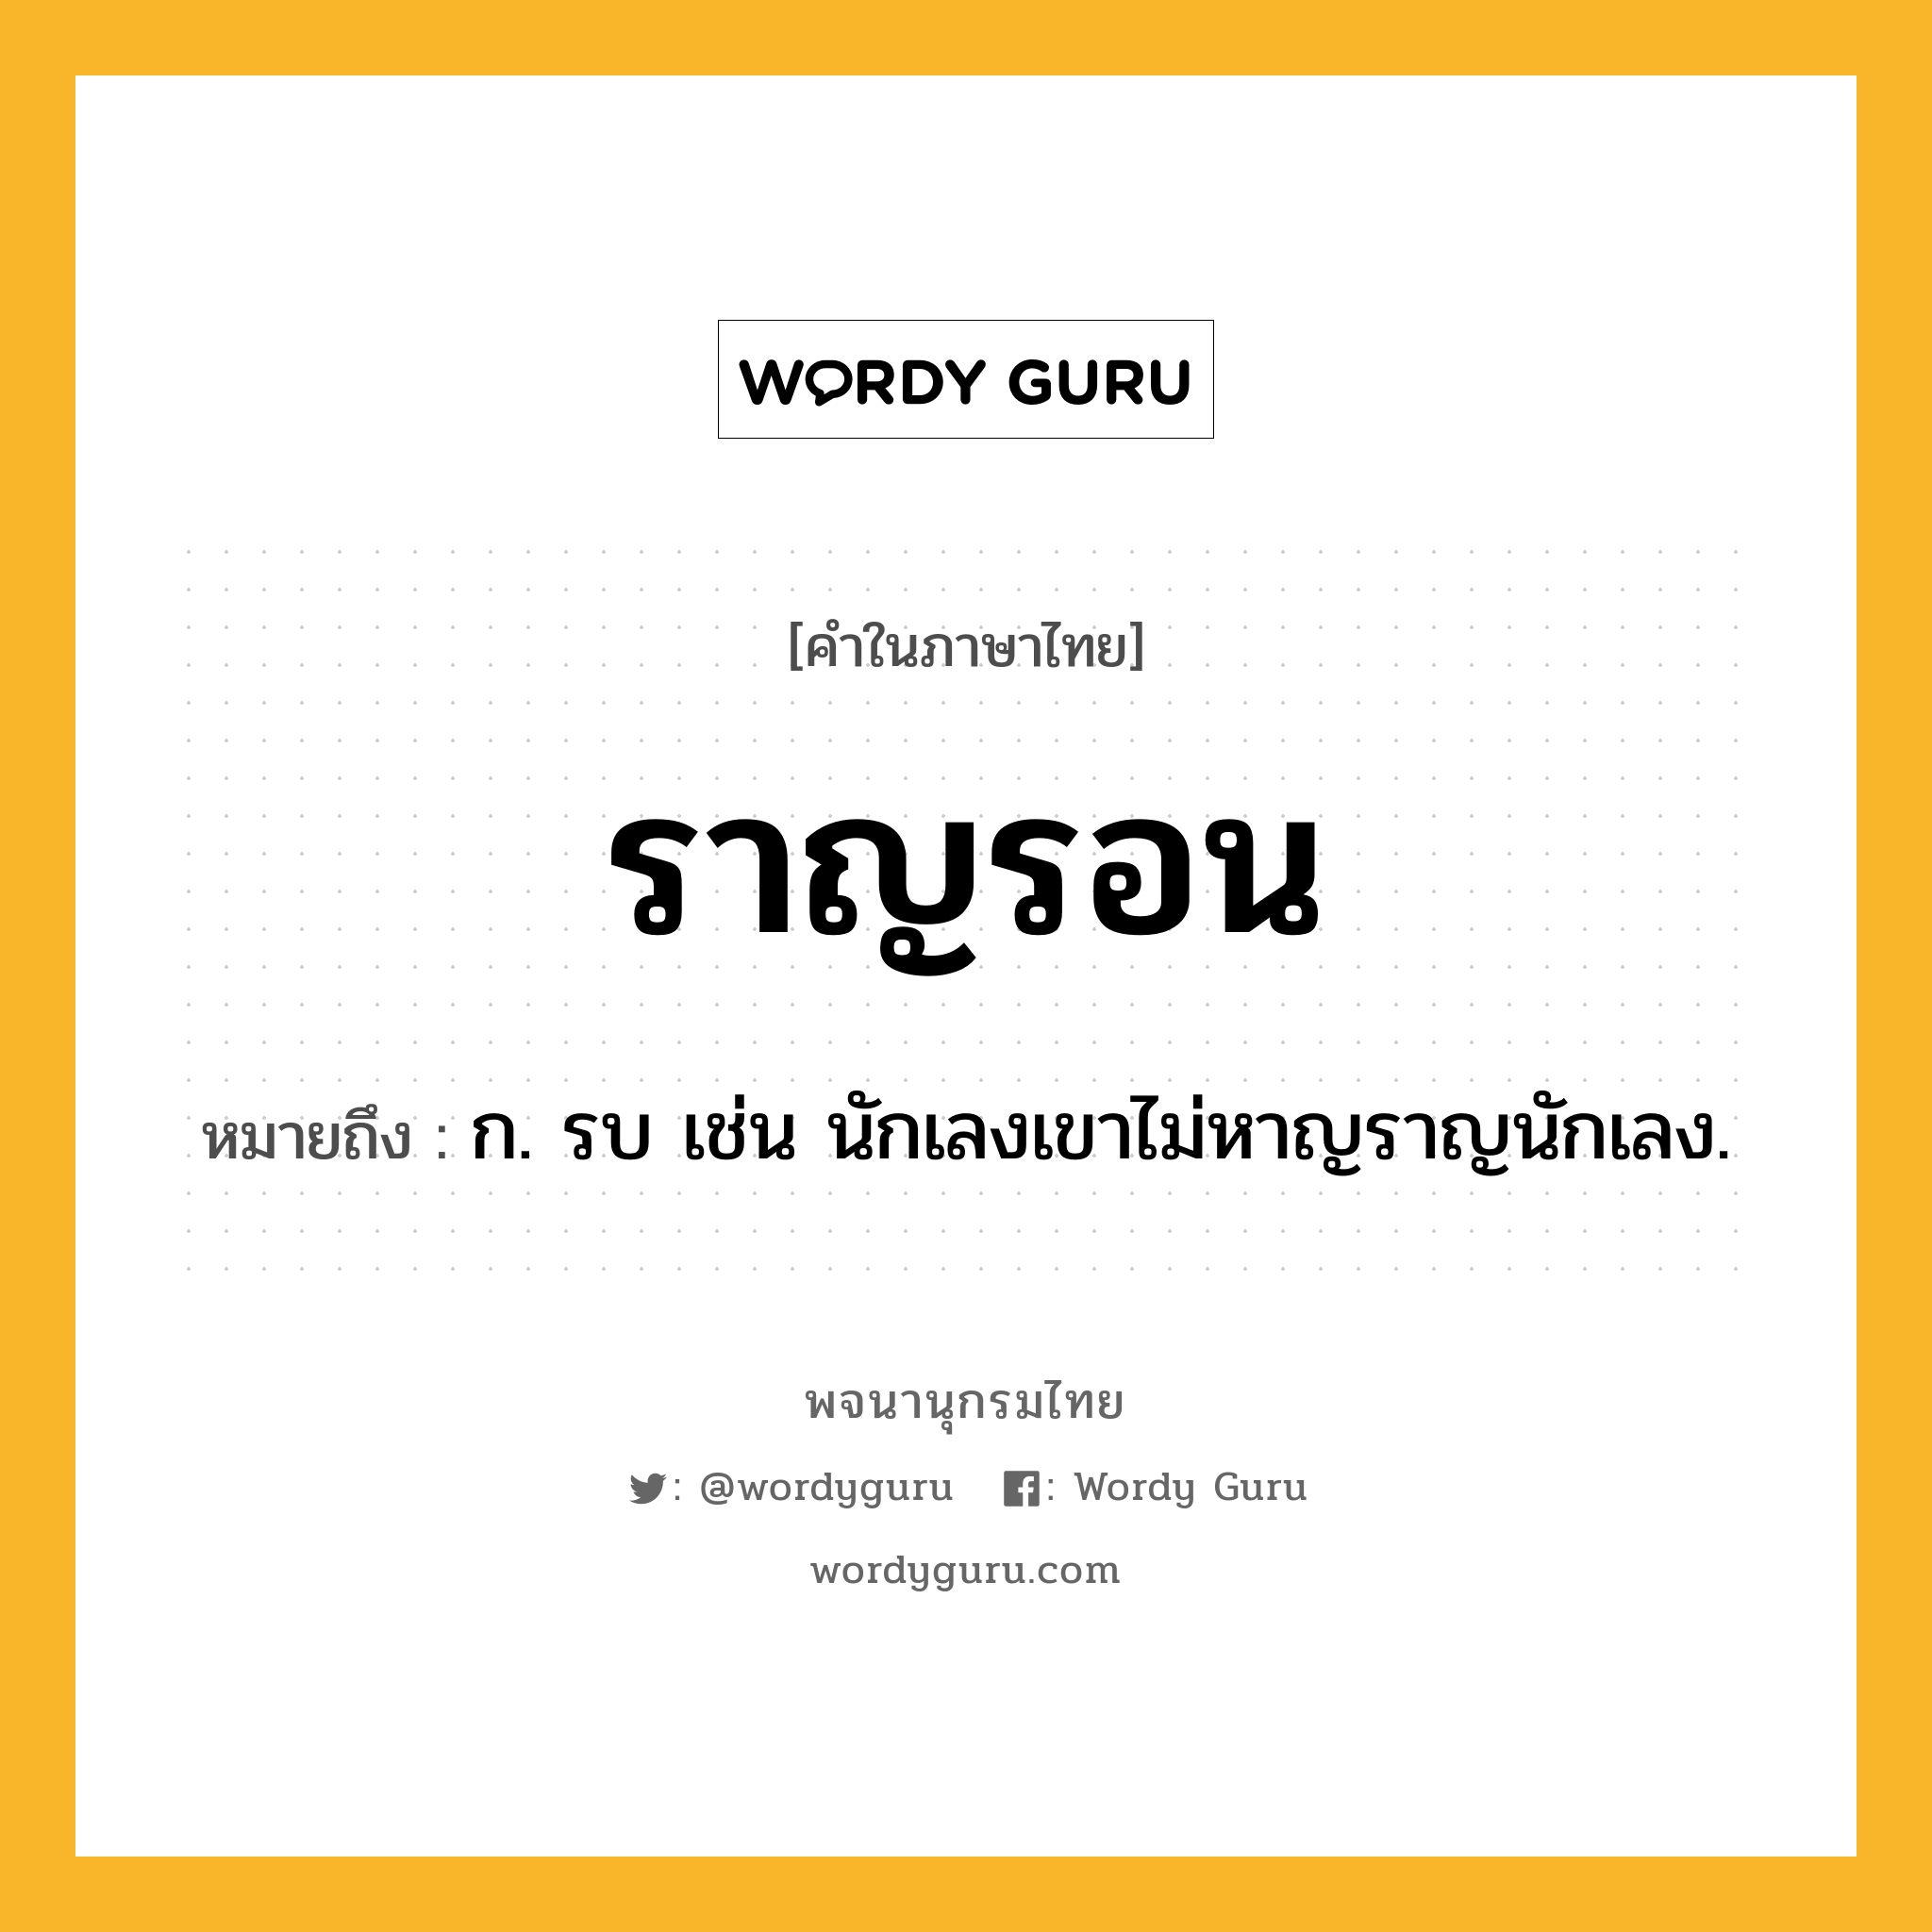 ราญรอน ความหมาย หมายถึงอะไร?, คำในภาษาไทย ราญรอน หมายถึง ก. รบ เช่น นักเลงเขาไม่หาญราญนักเลง.